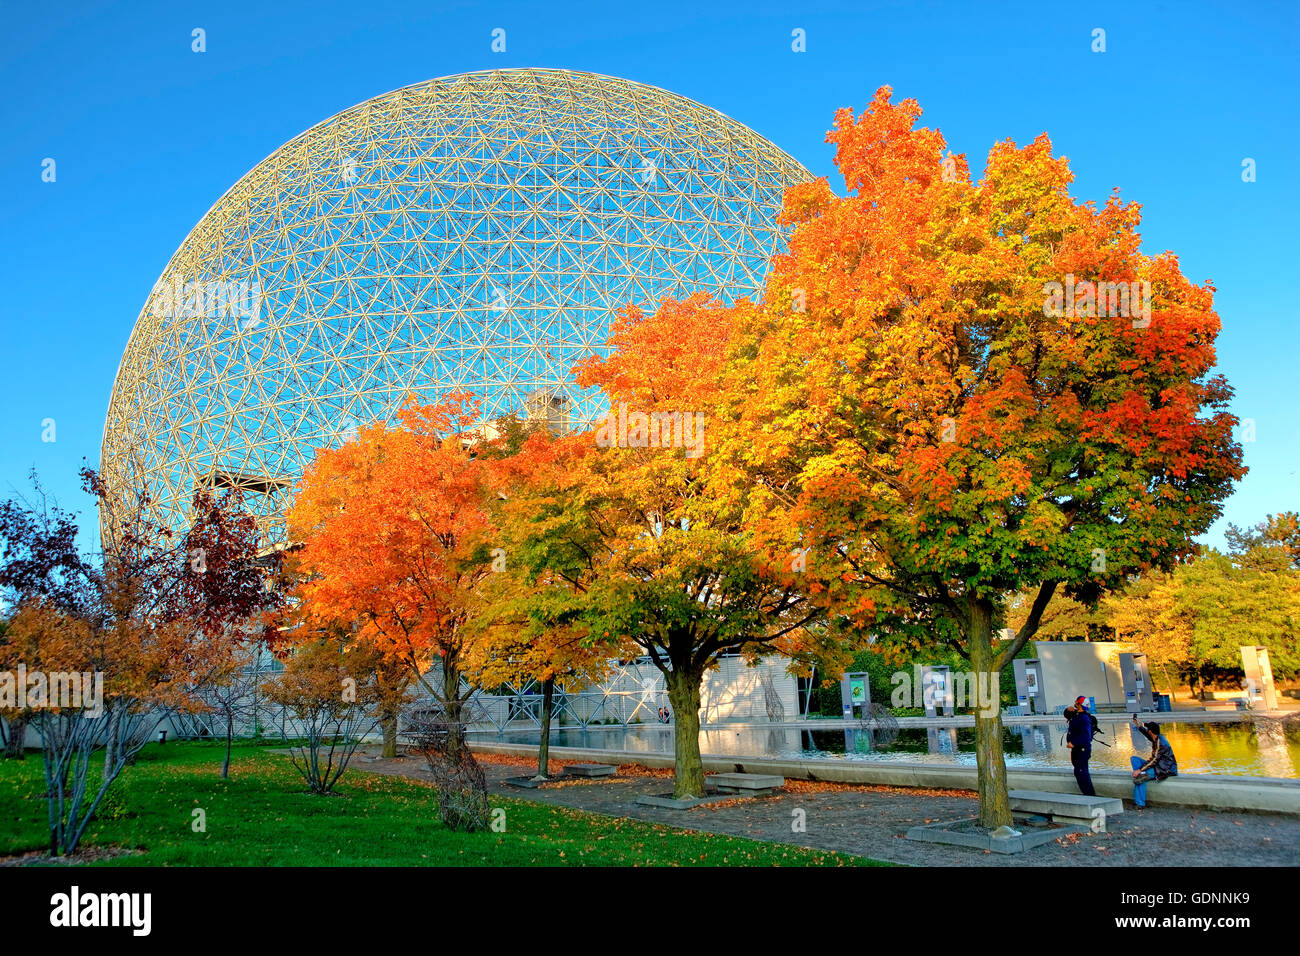 La structure de la biosphère sur l'île de Saint Louis dans le Parc Jean Drapeau à Montréal Banque D'Images